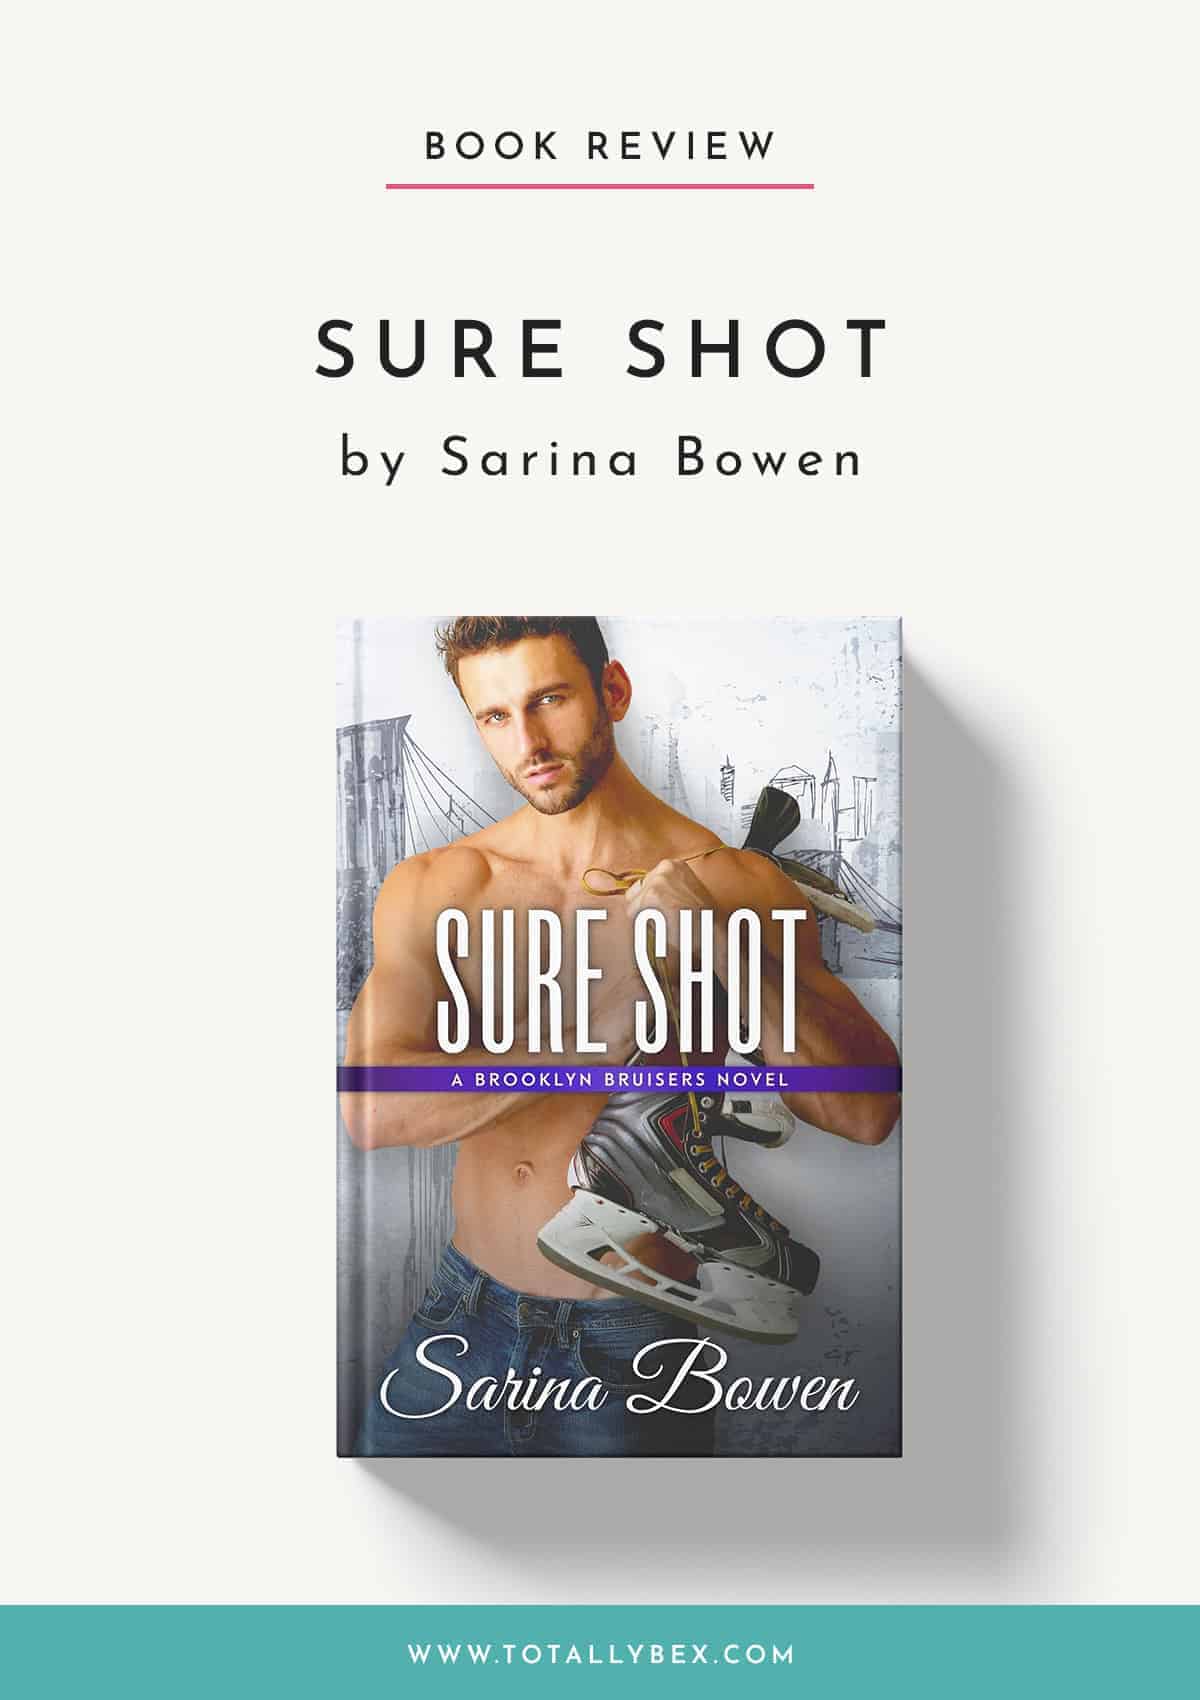 Sure Shot by Sarina Bowen-Book ReviewSure Shot by Sarina Bowen-Book Review